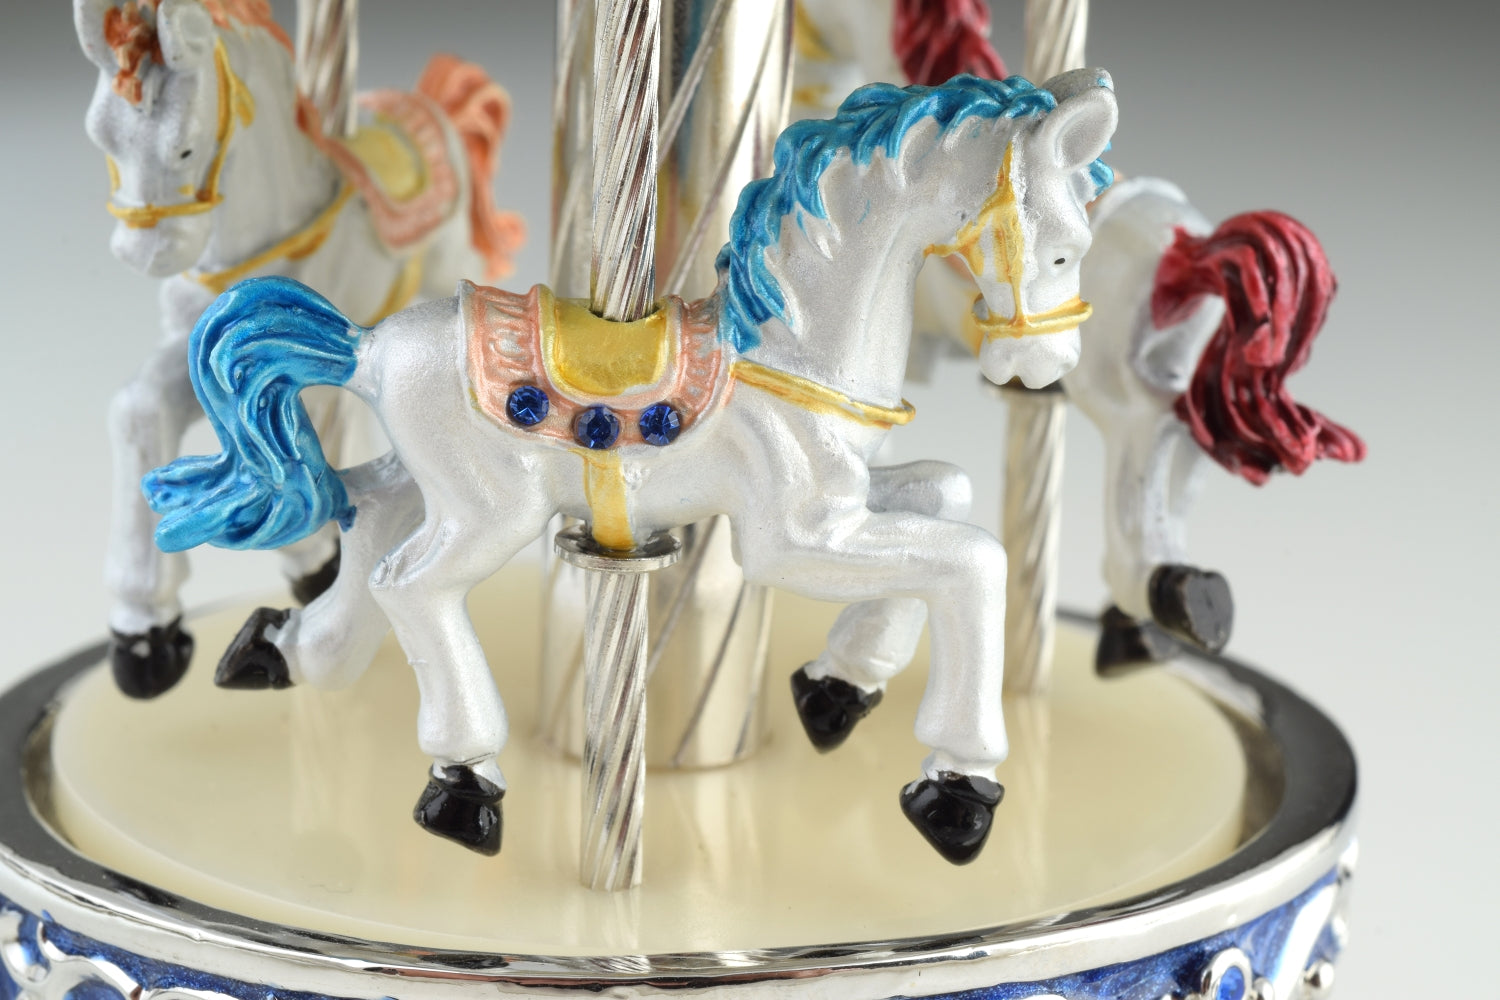 Blaues Fabergé-Eierkarussell mit weißen königlichen Pferden